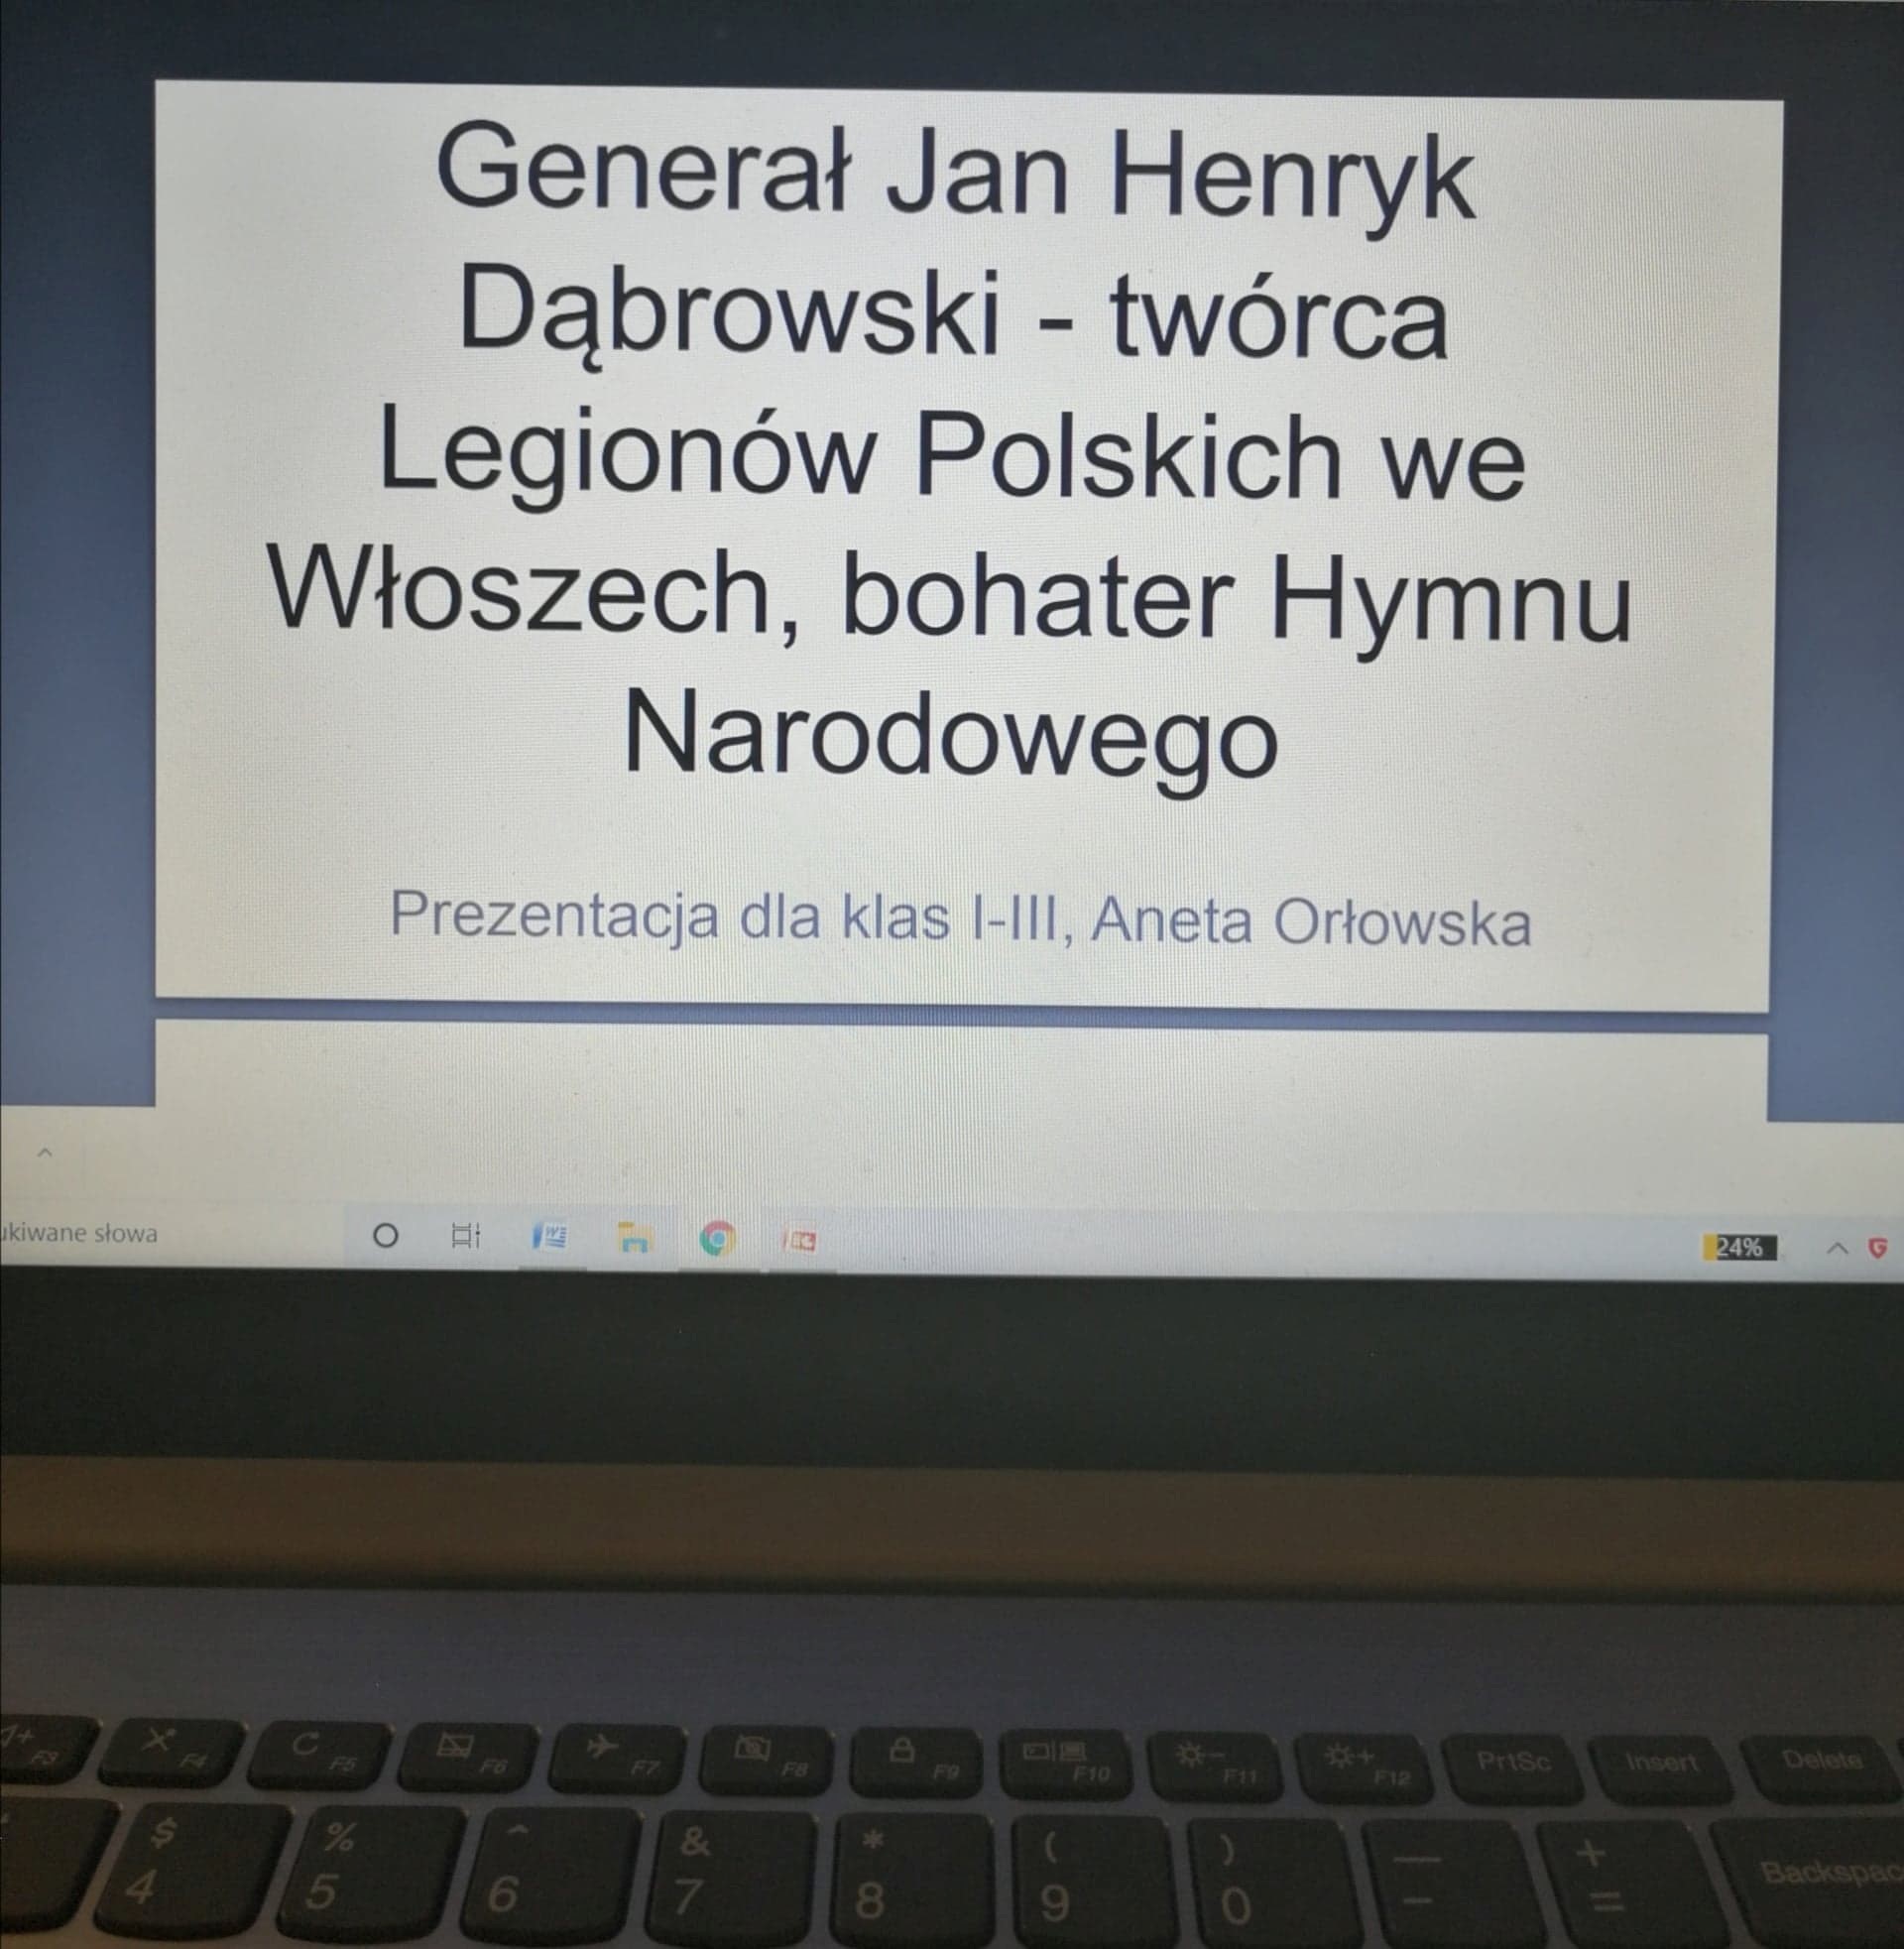 Prezentacja o generale Janie Henryku Dąbrowskim dla klas I-III